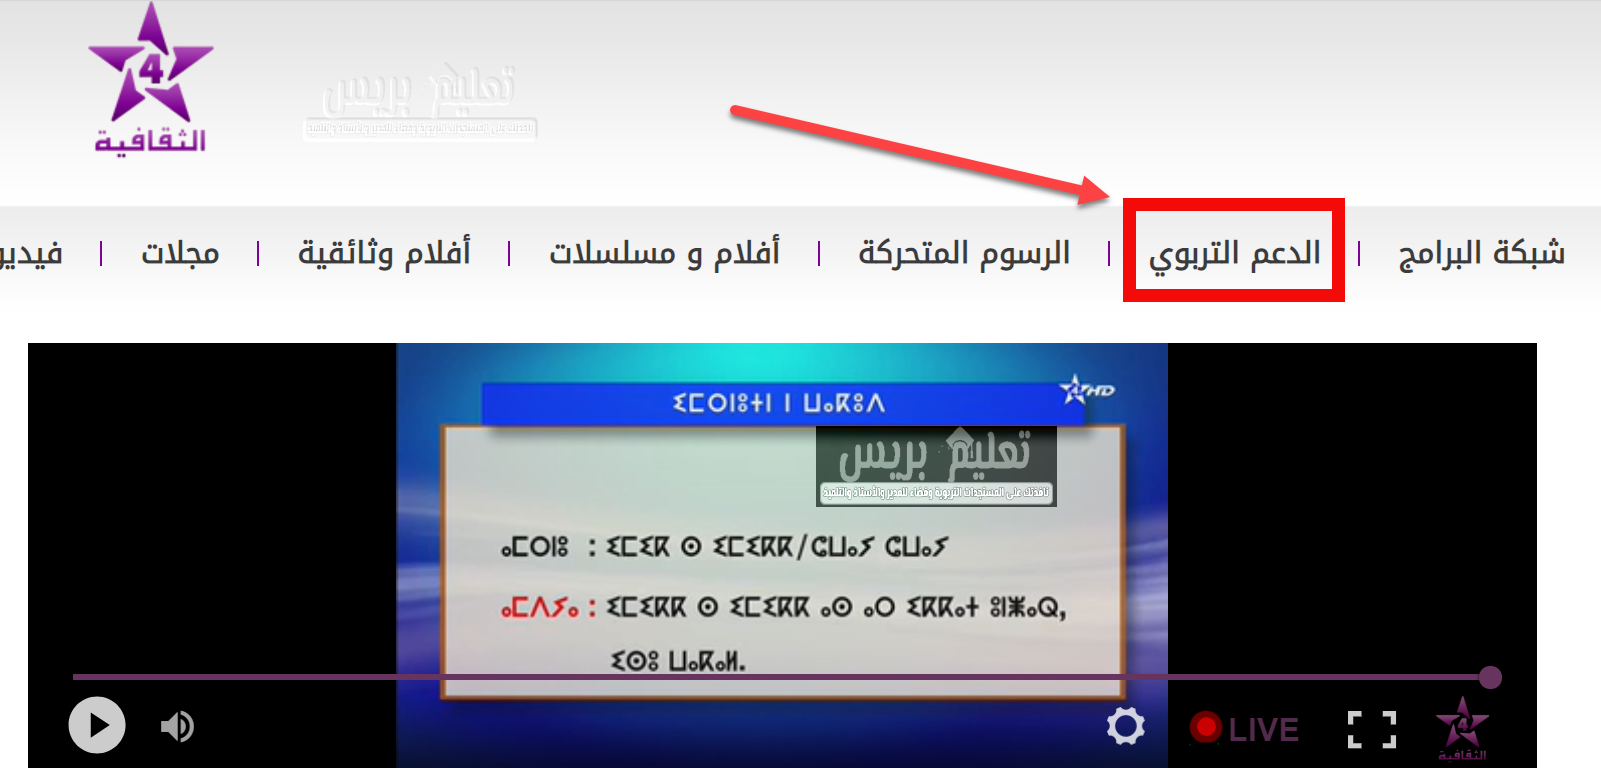 ترددات وموقع القناة الرابعة المغربية الثقافية عن بعد